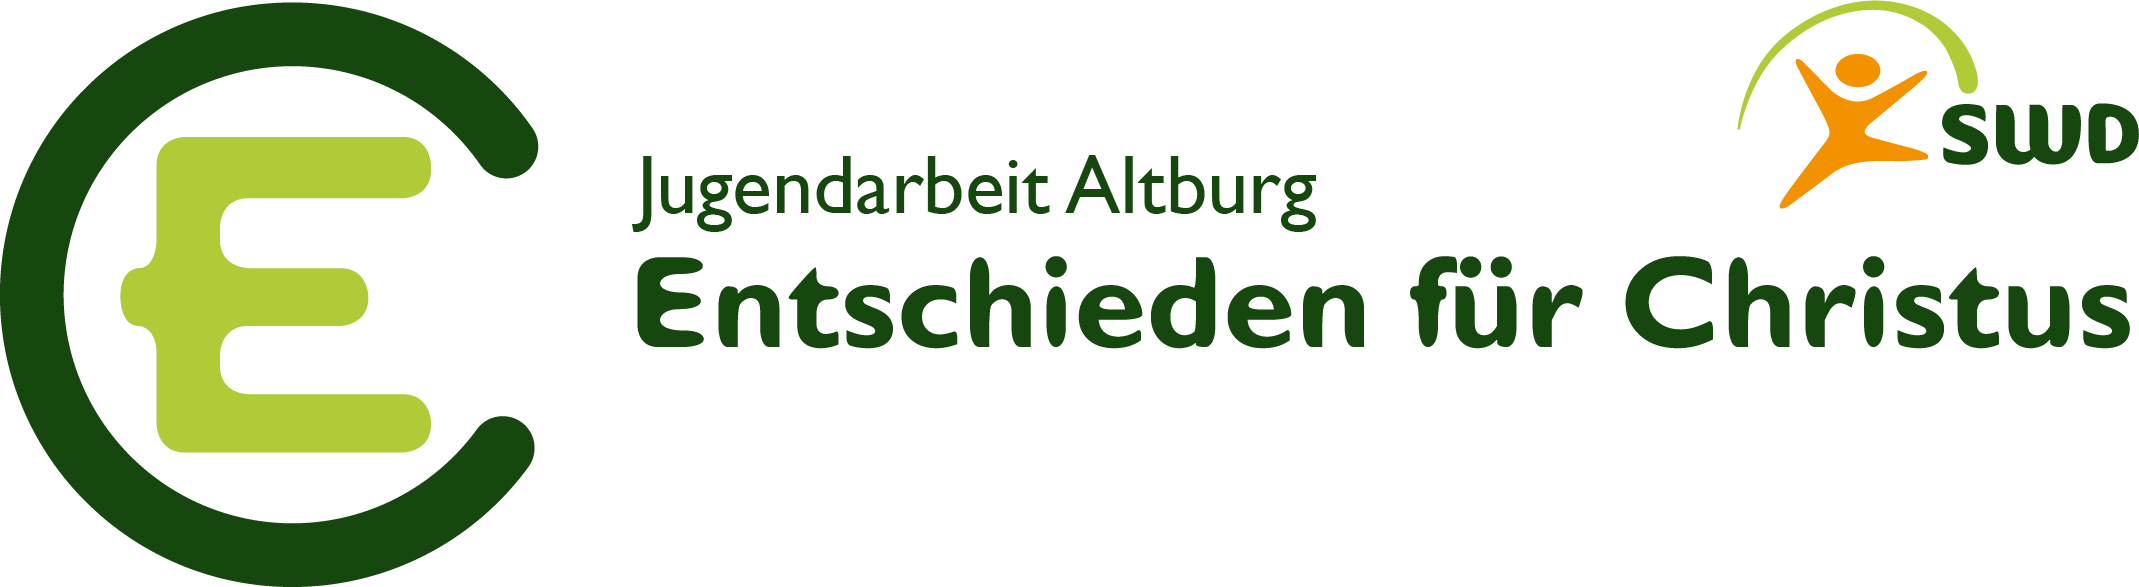 EC Altburg